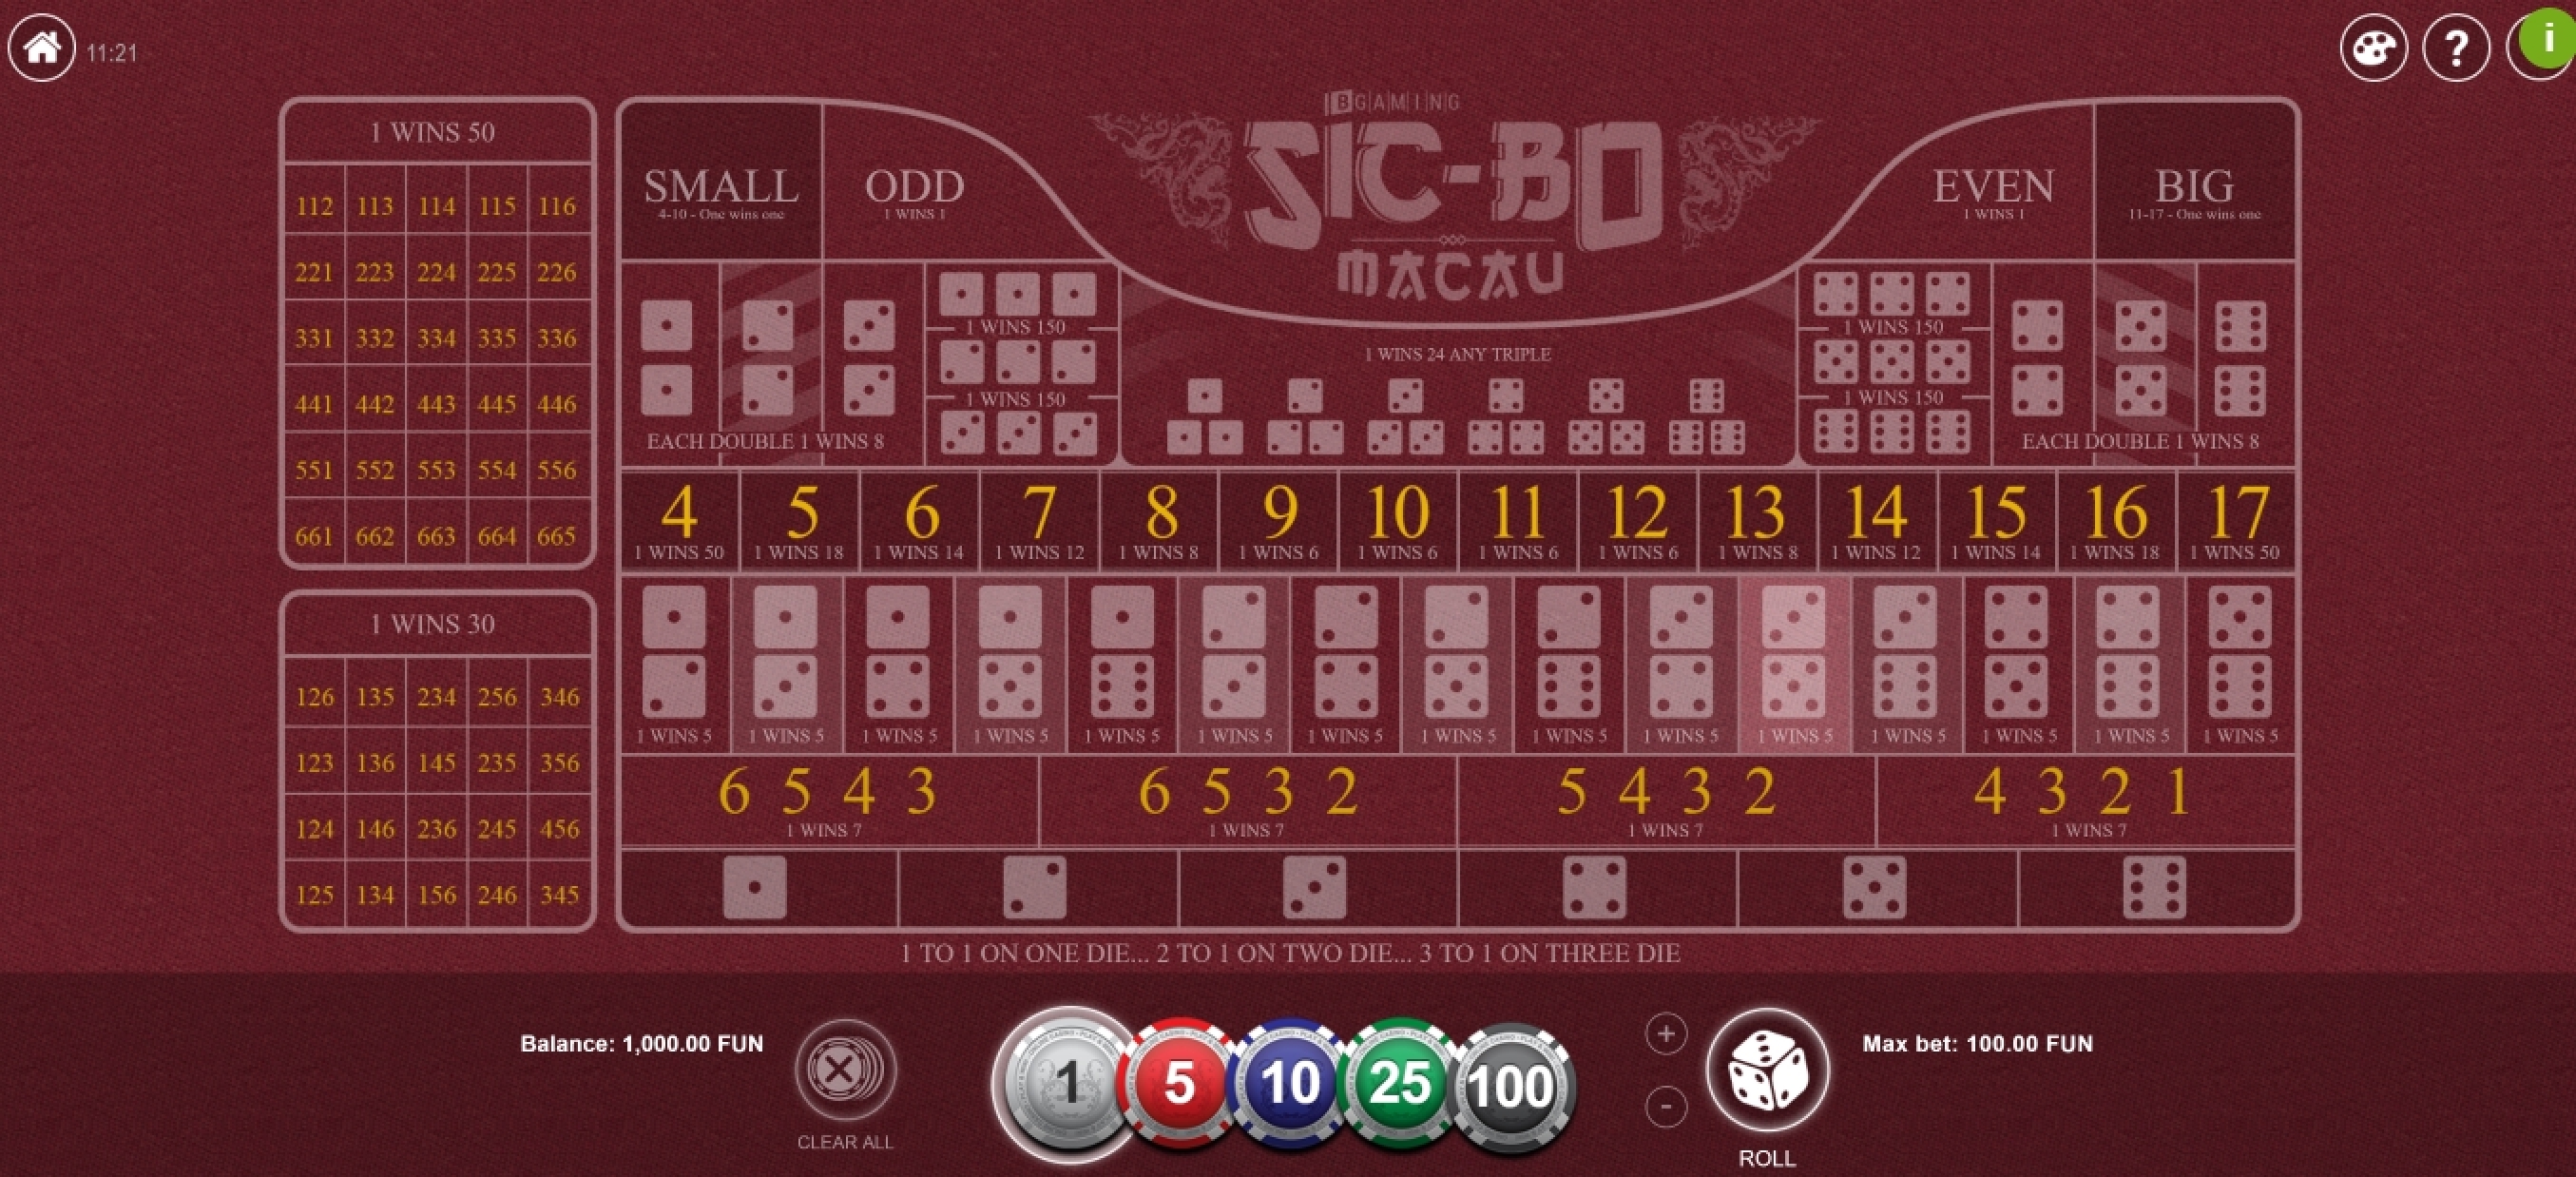 Reels in Sic Bo Macau Slot Game by BGAMING